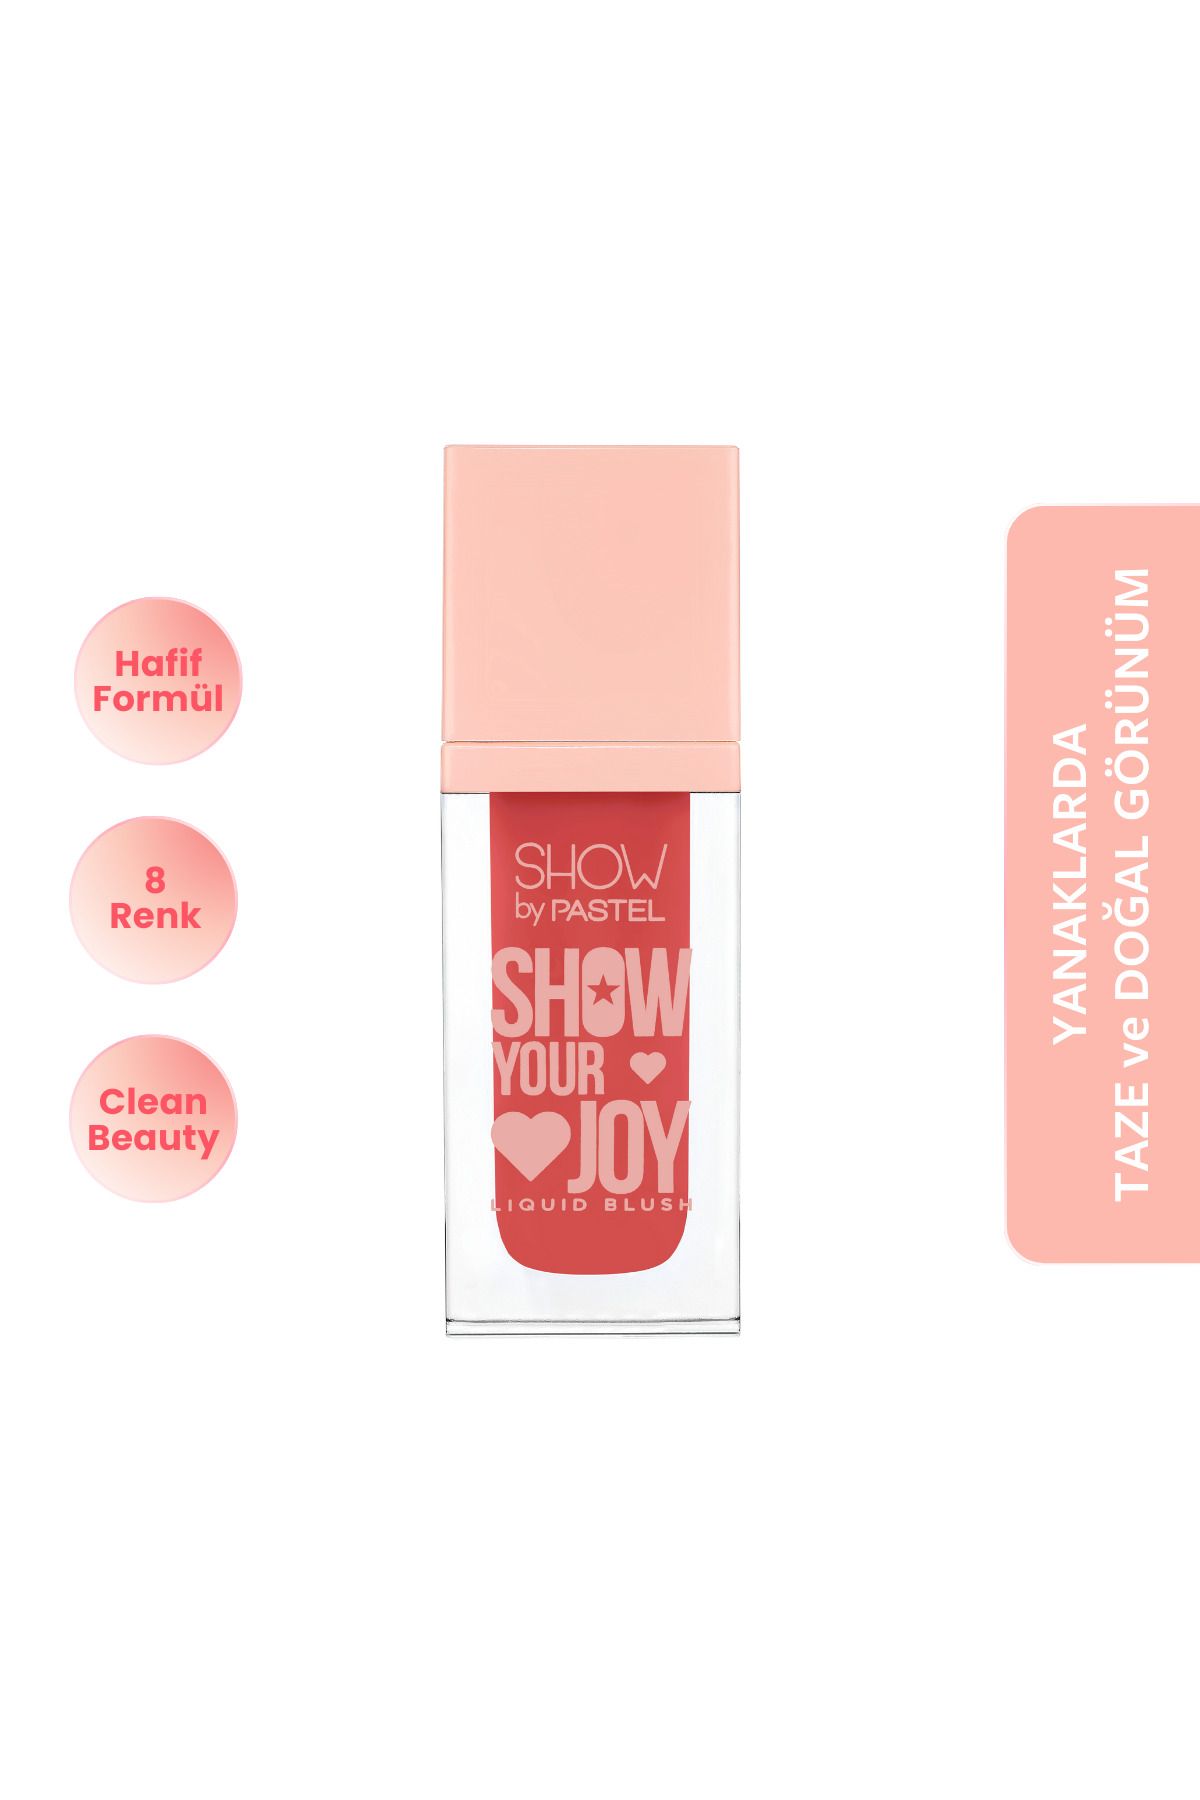 Show by Pastel Show Your Joy Liquid Blush - Likit Allık 58